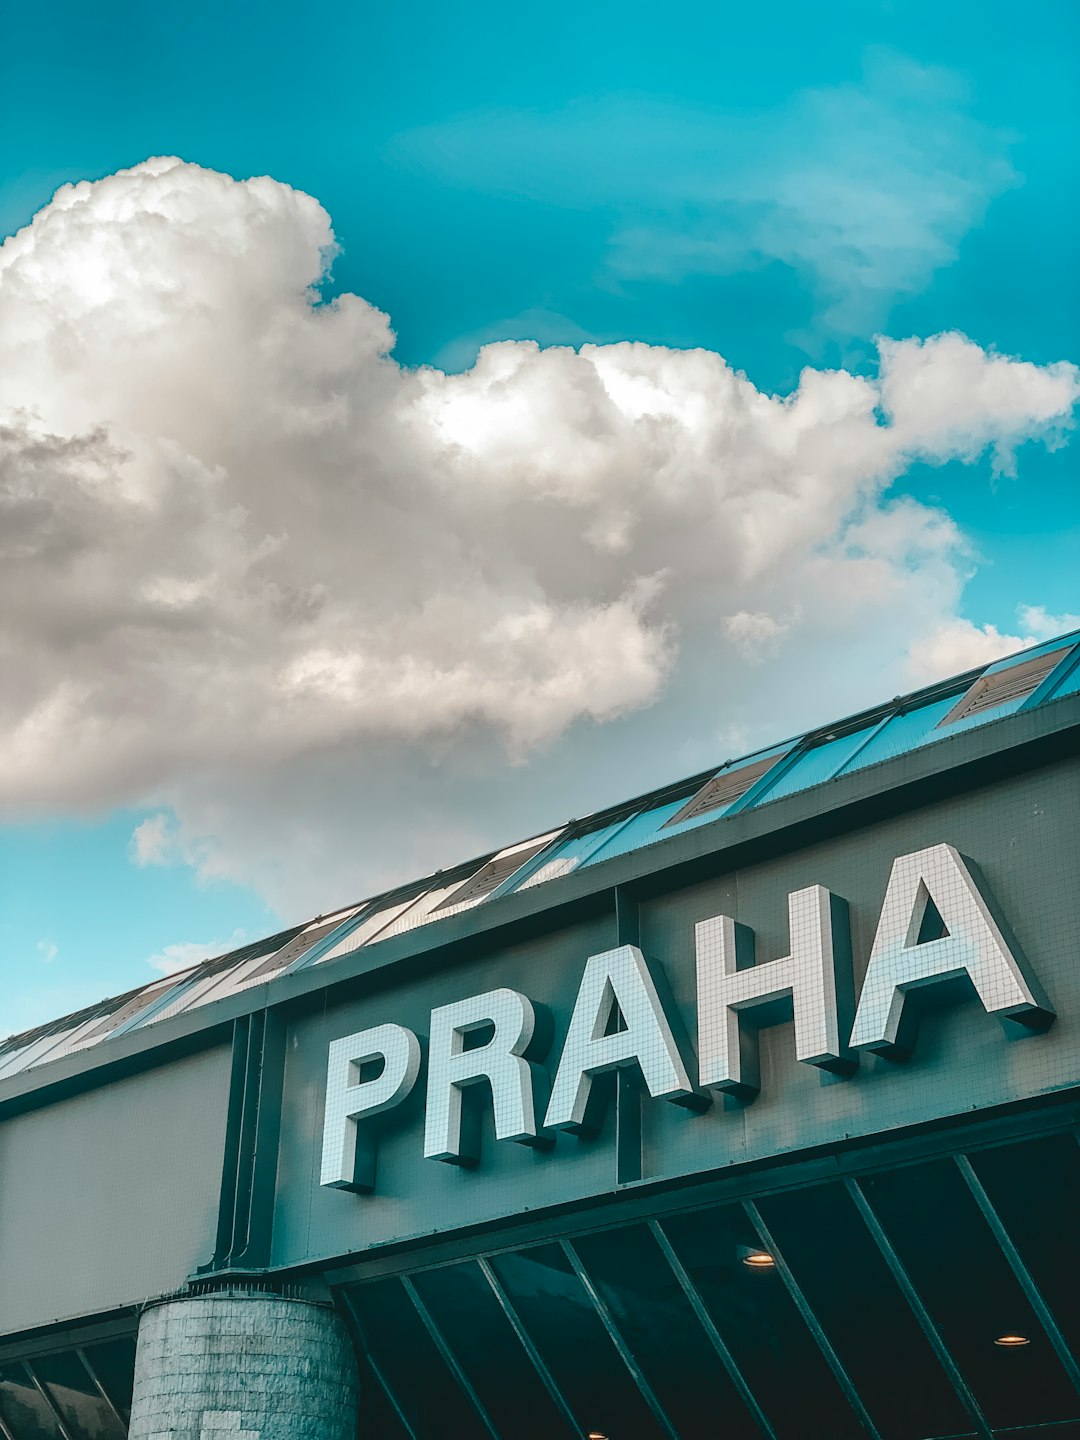 Praha storefront under clear blue sky